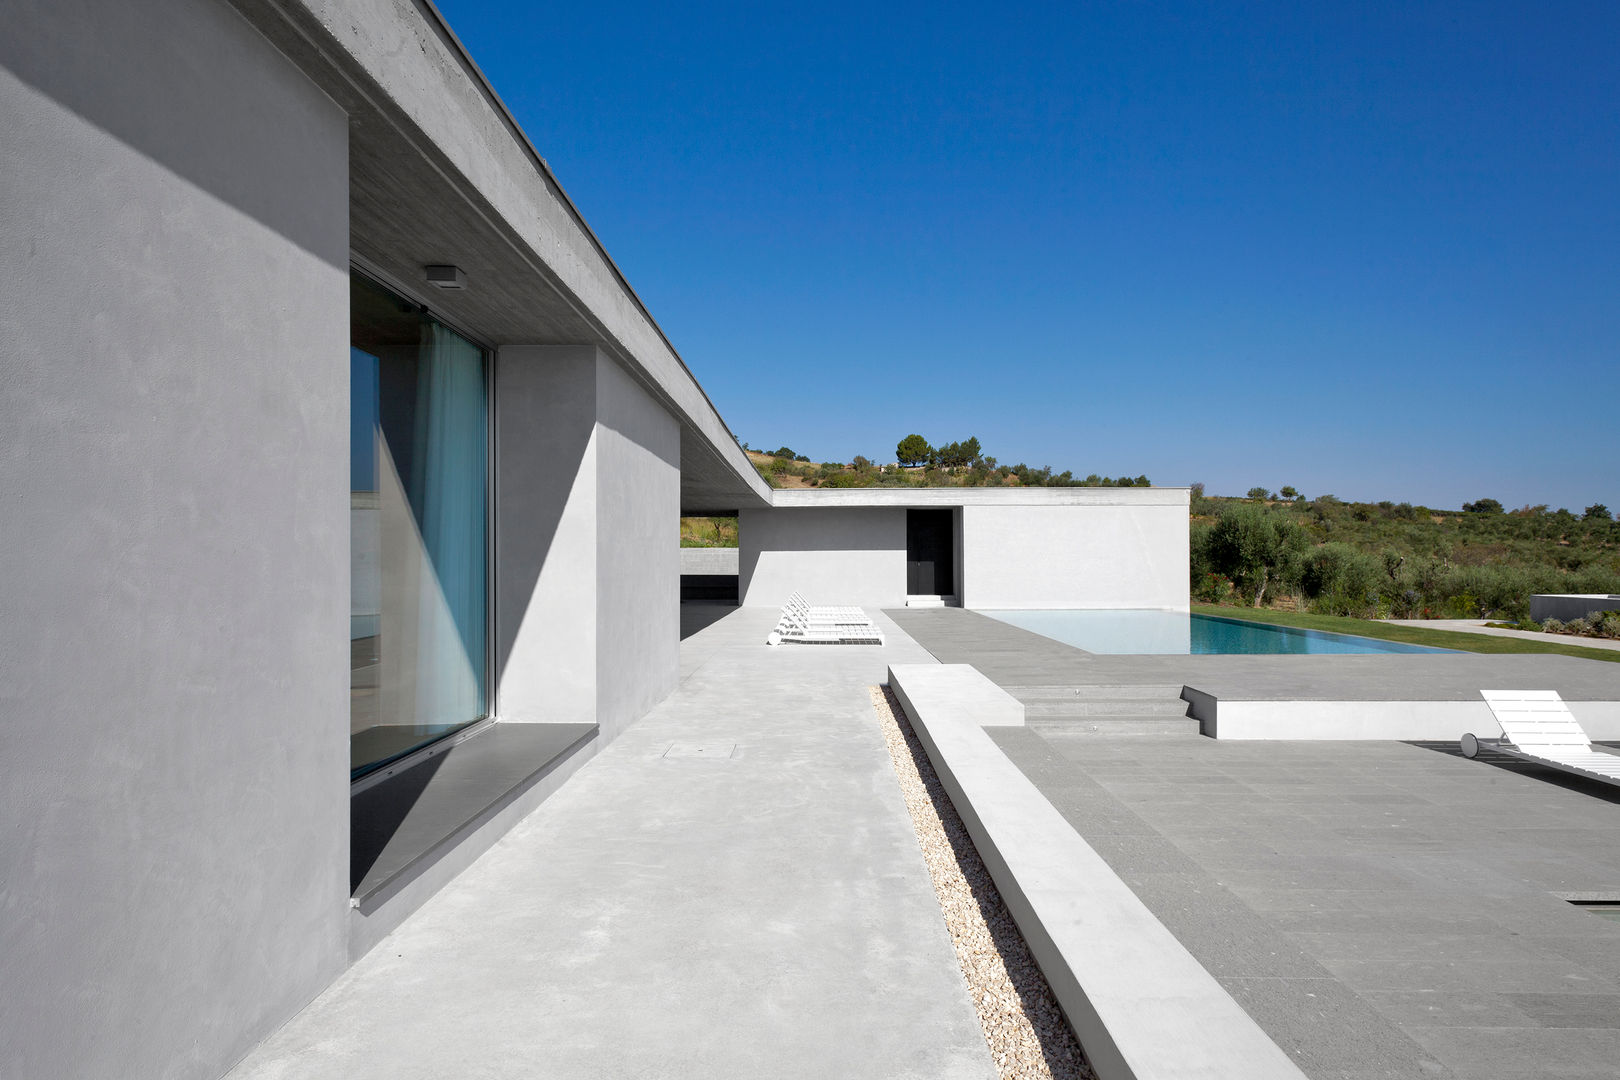 RESIDENZA PRIVATA, Open Space / Architecture Open Space / Architecture Mediterranean style houses